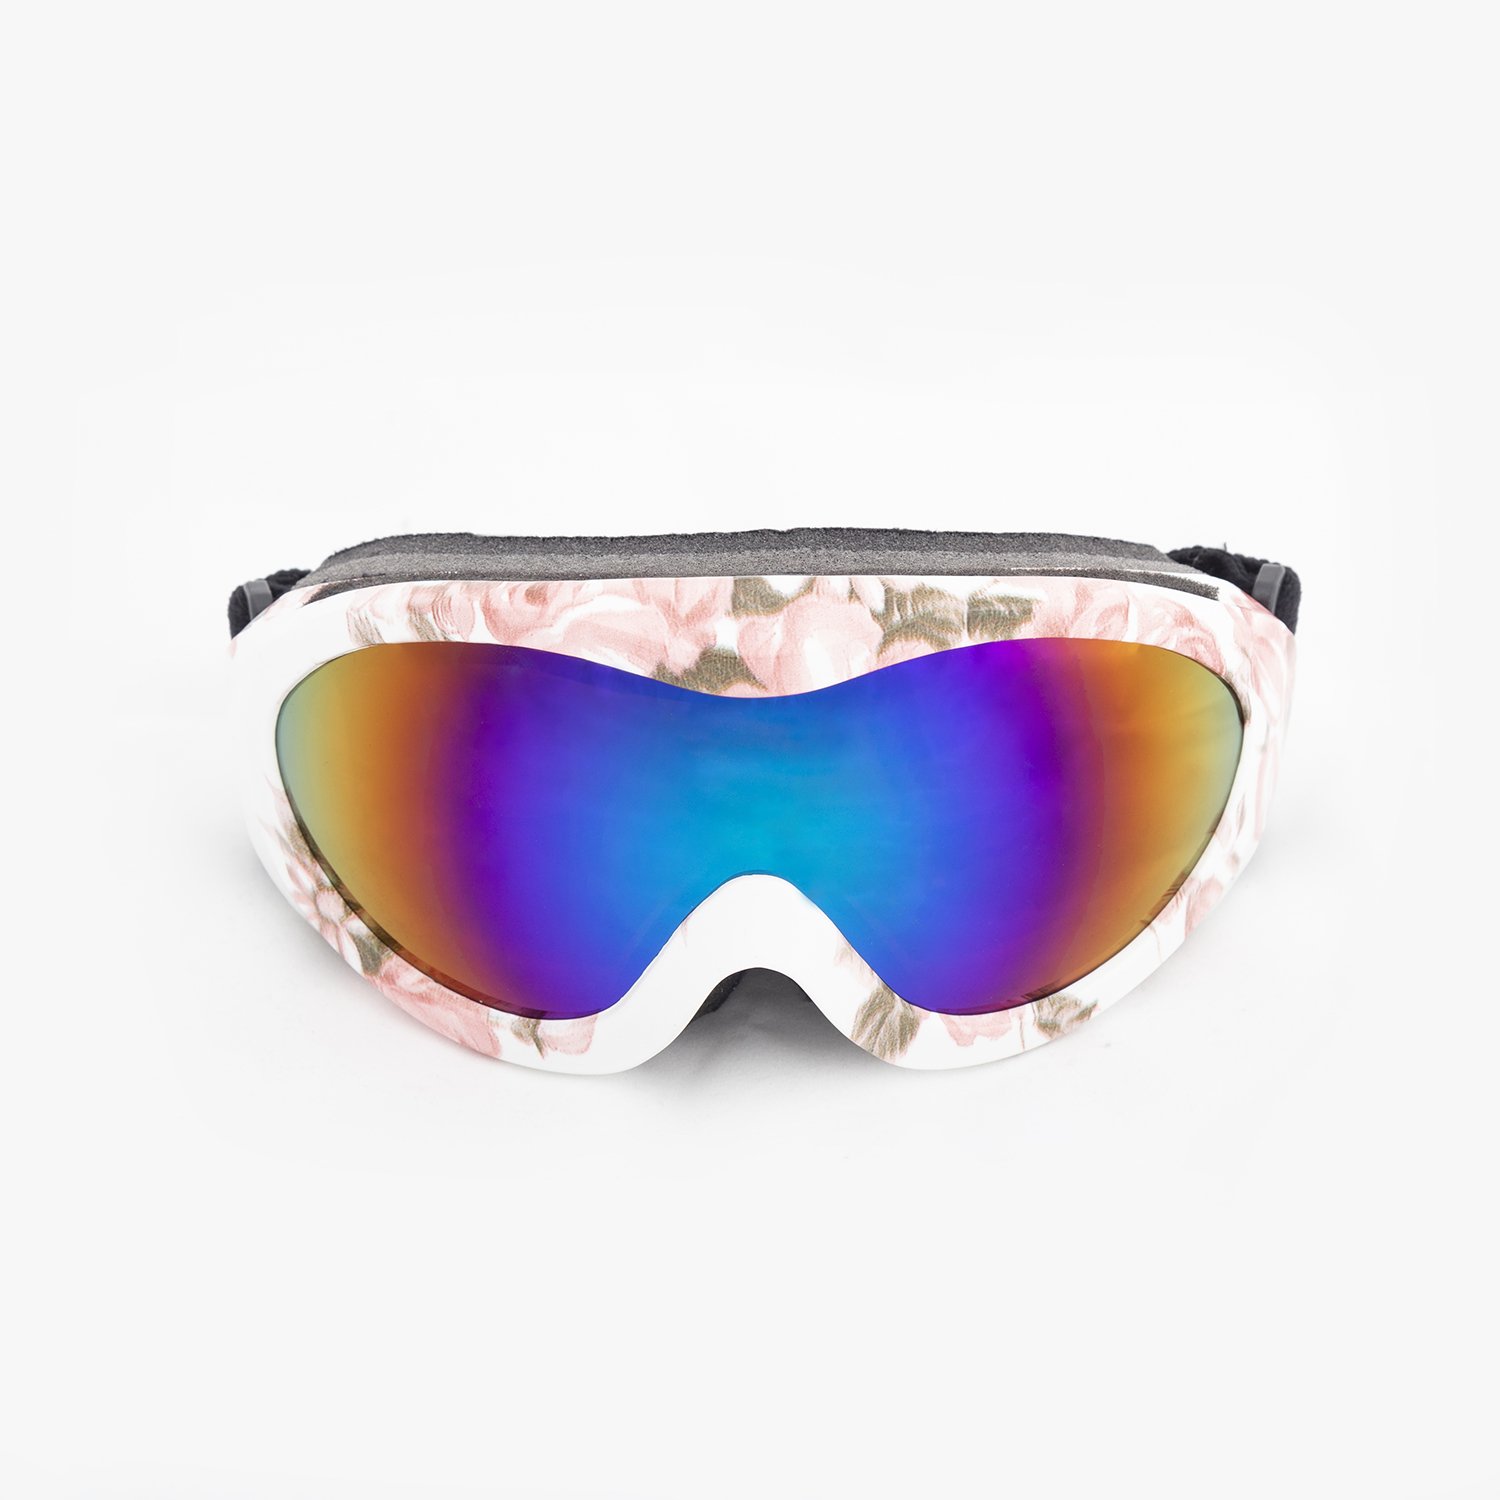 Evolite Flip Junior SP119-F Kayak Gözlüğü